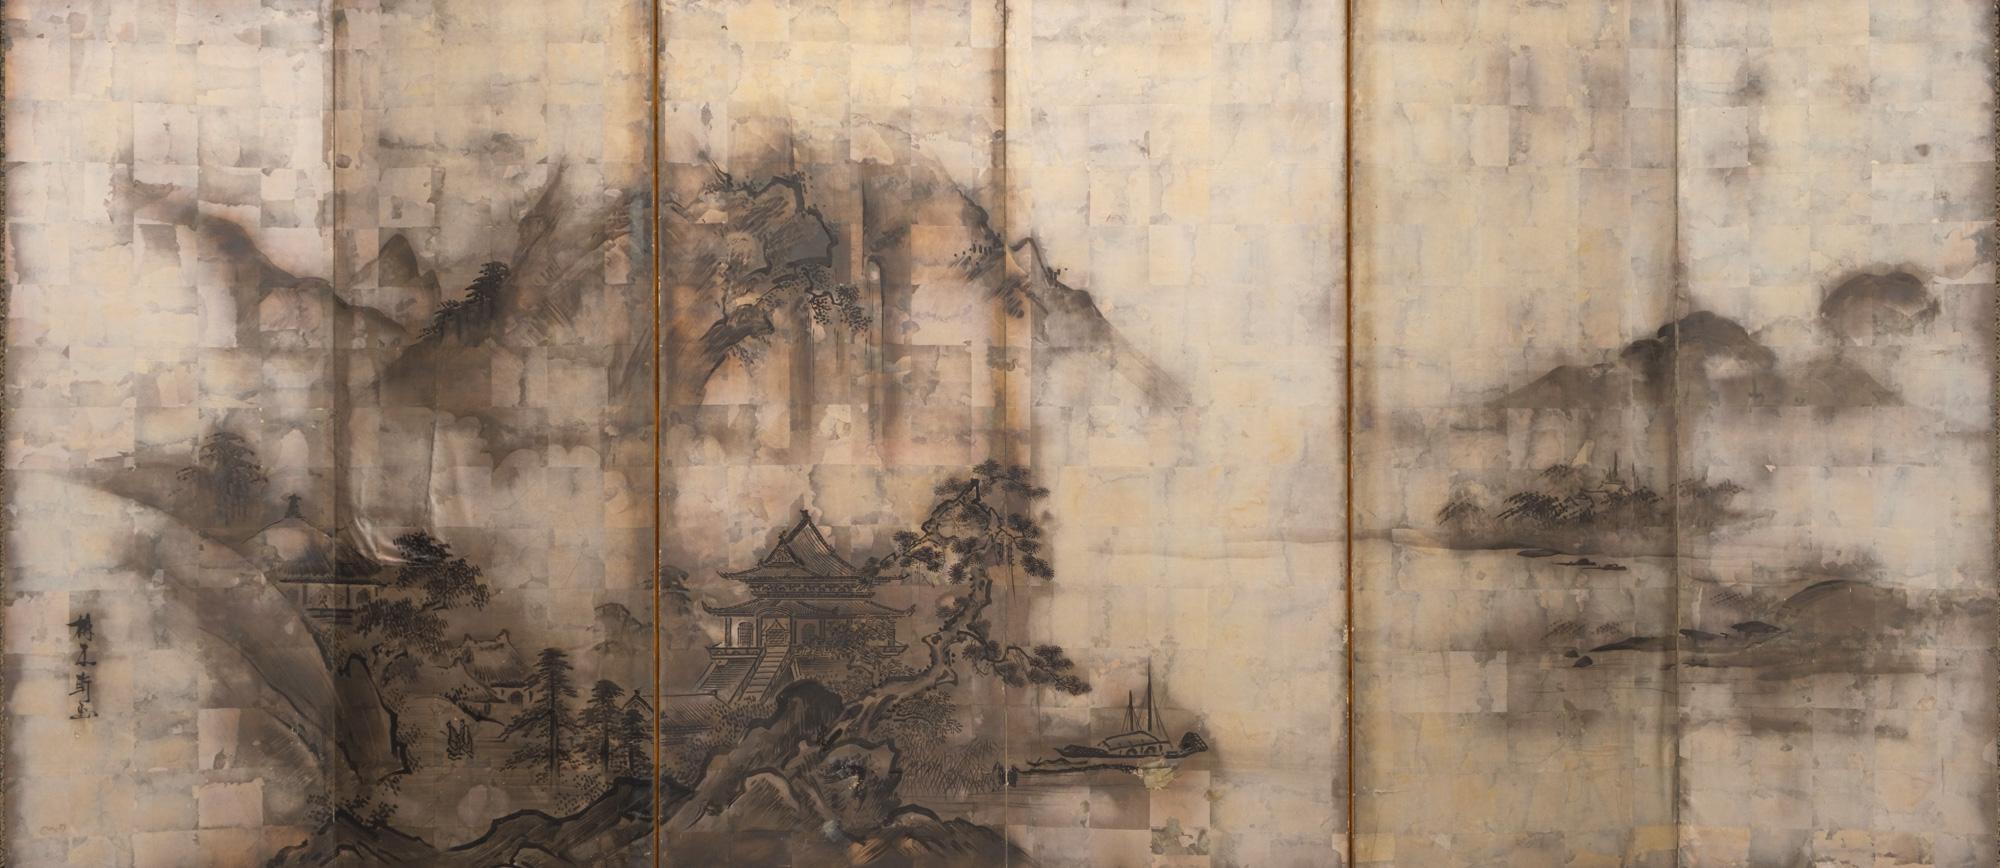 Un grand byôbu (paravent) captivant à six panneaux avec une peinture raffinée du style de l'école Nanga représentant un paysage de montagne paisible le long d'une rivière. Un grand pavillon chinois se trouve au pied d'une haute falaise, à côté d'un